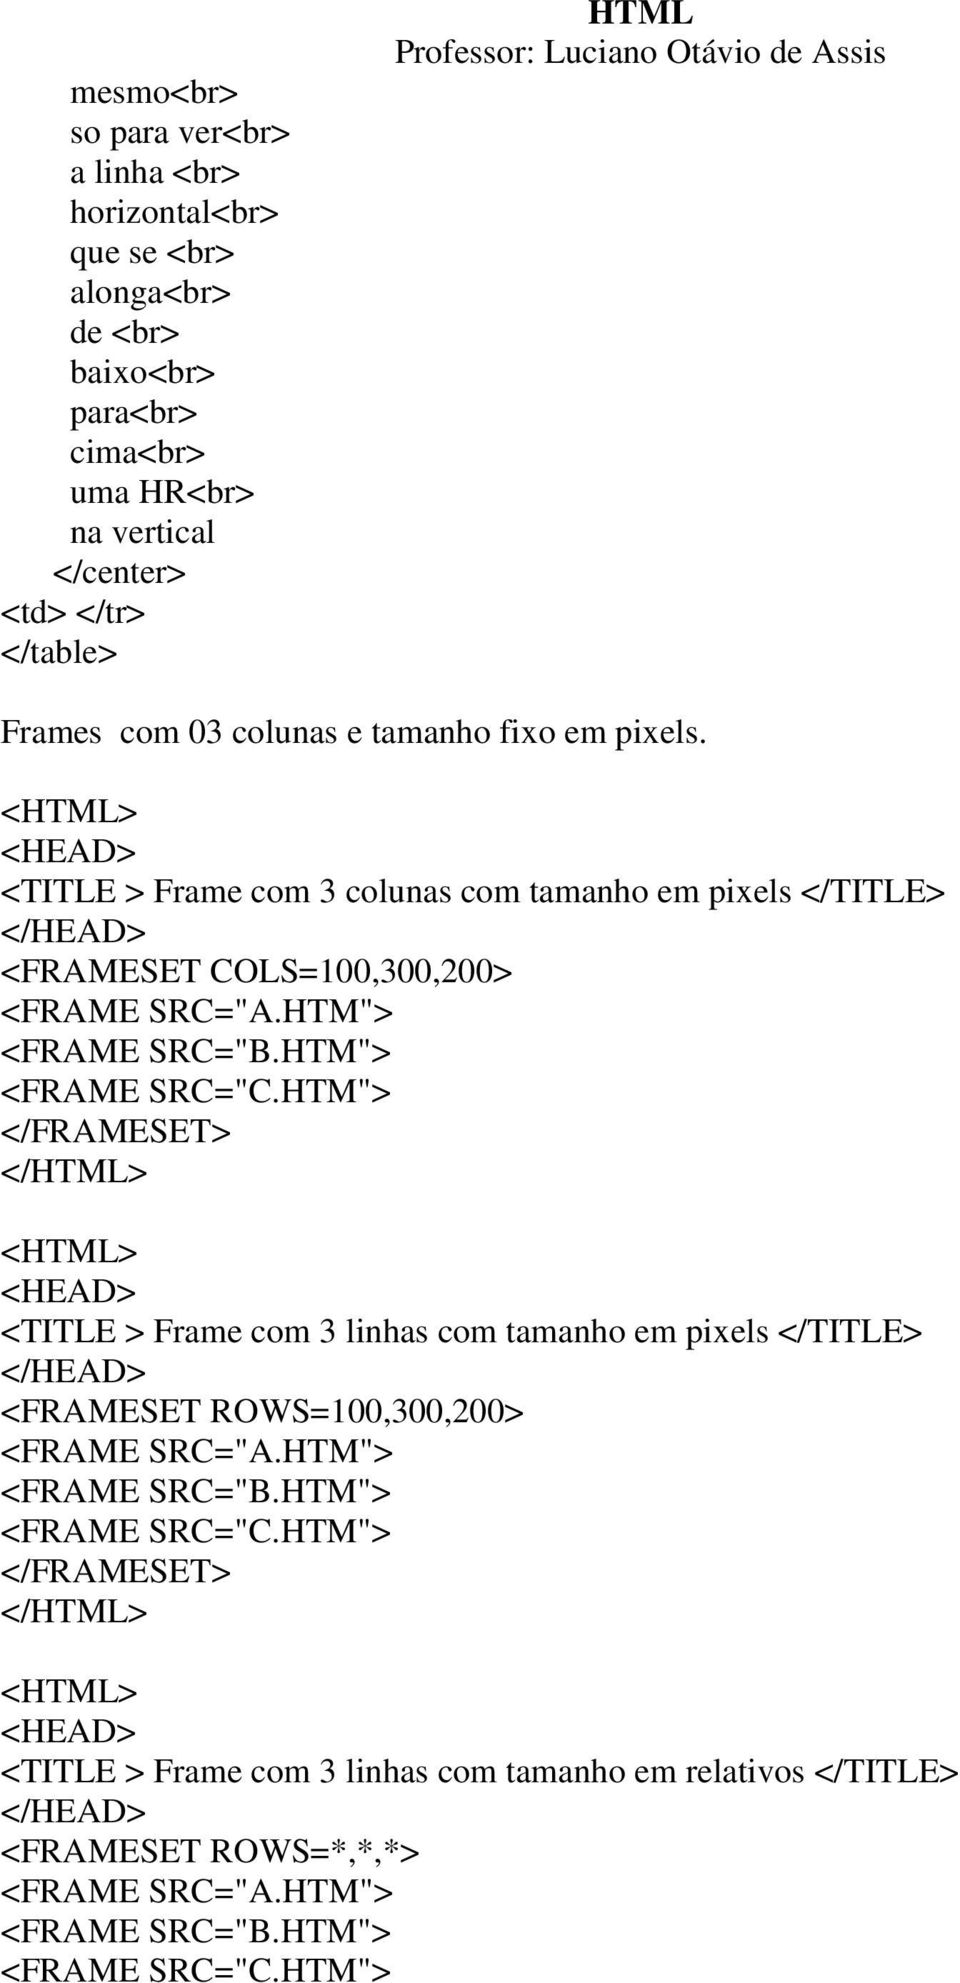 HTM"> <FRAME SRC="C.HTM"> </FRAMESET> </HTML> <HTML> <HEAD> <TITLE > Frame com 3 linhas com tamanho em pixels </TITLE> </HEAD> <FRAMESET ROWS=100,300,200> <FRAME SRC="A.HTM"> <FRAME SRC="B.